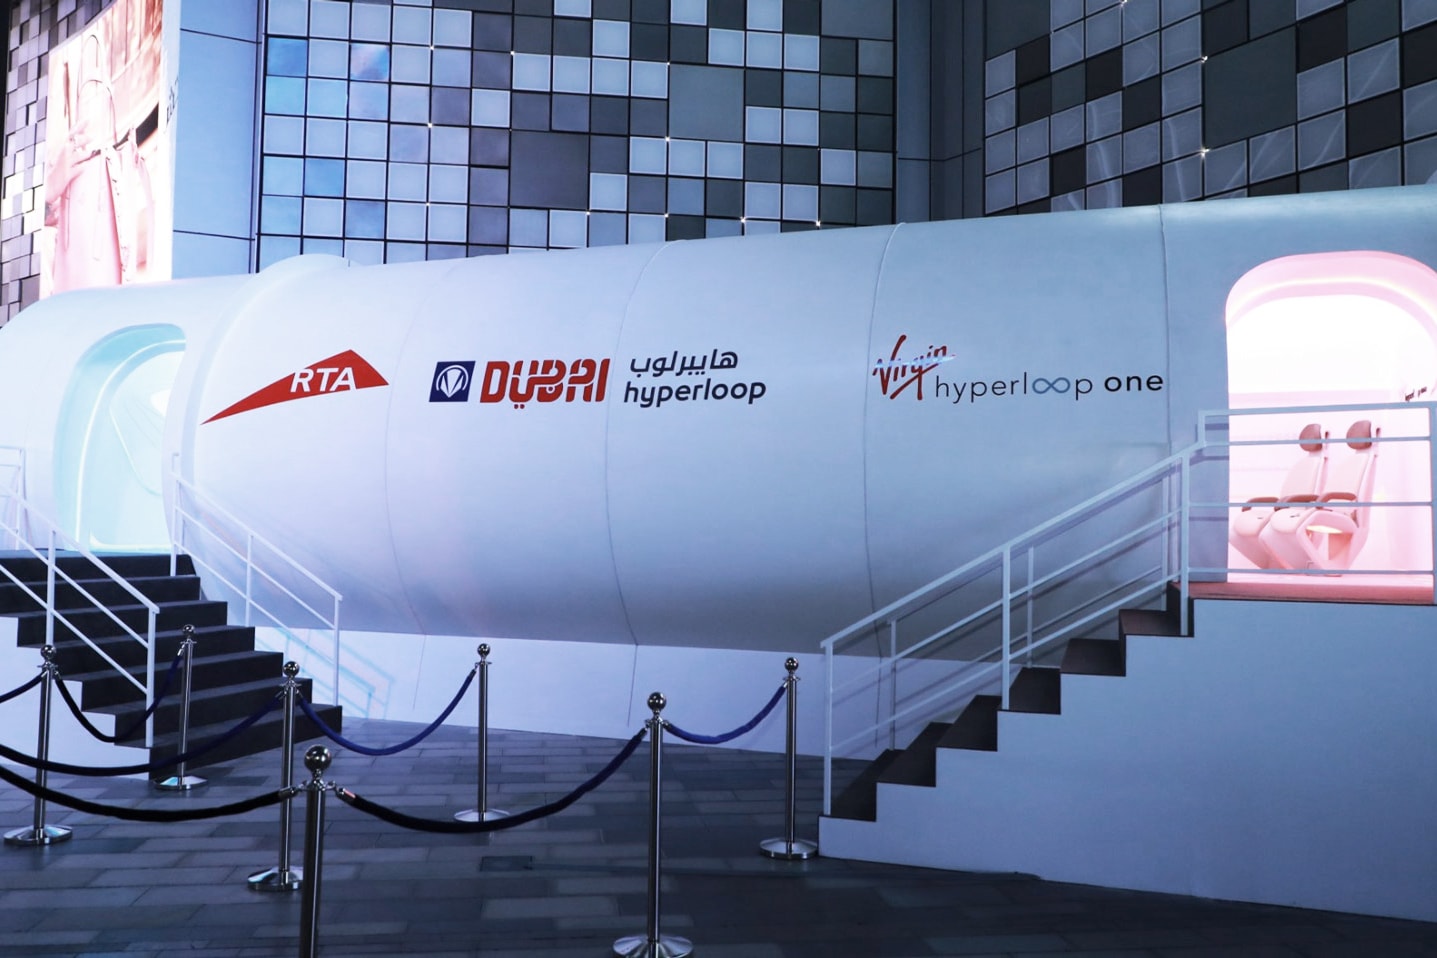 Первый прототип первого пассажирского модуля Hyperloop компании Virgin Ричард Брэнсон Илон Маск Дубай Абу-Даби